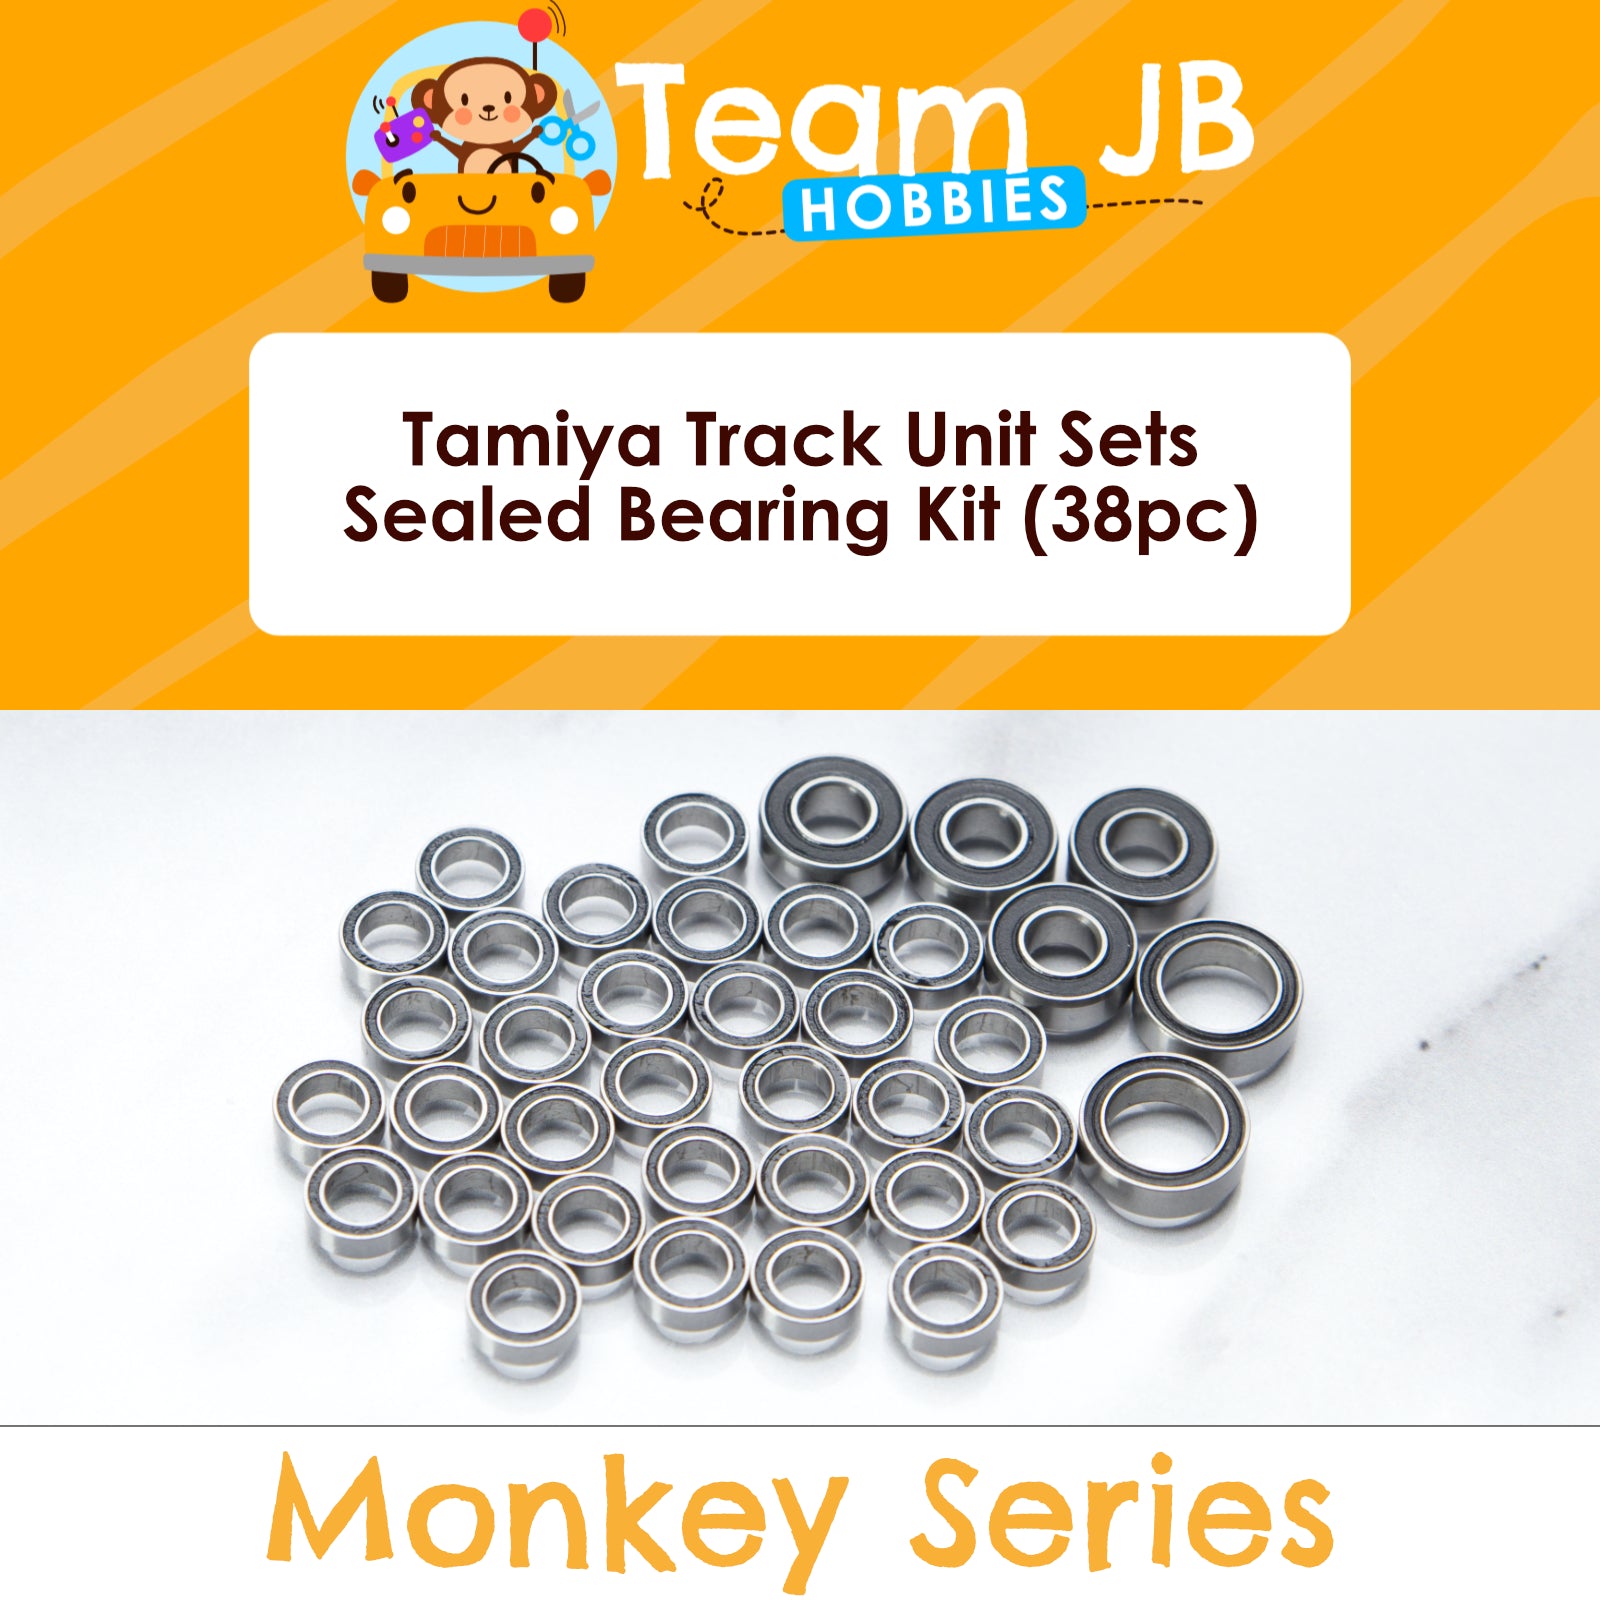 Tamiya Track Unit Sets - 2PCS (#54948) (Enough for 2 track units) - Sealed Bearing Kit